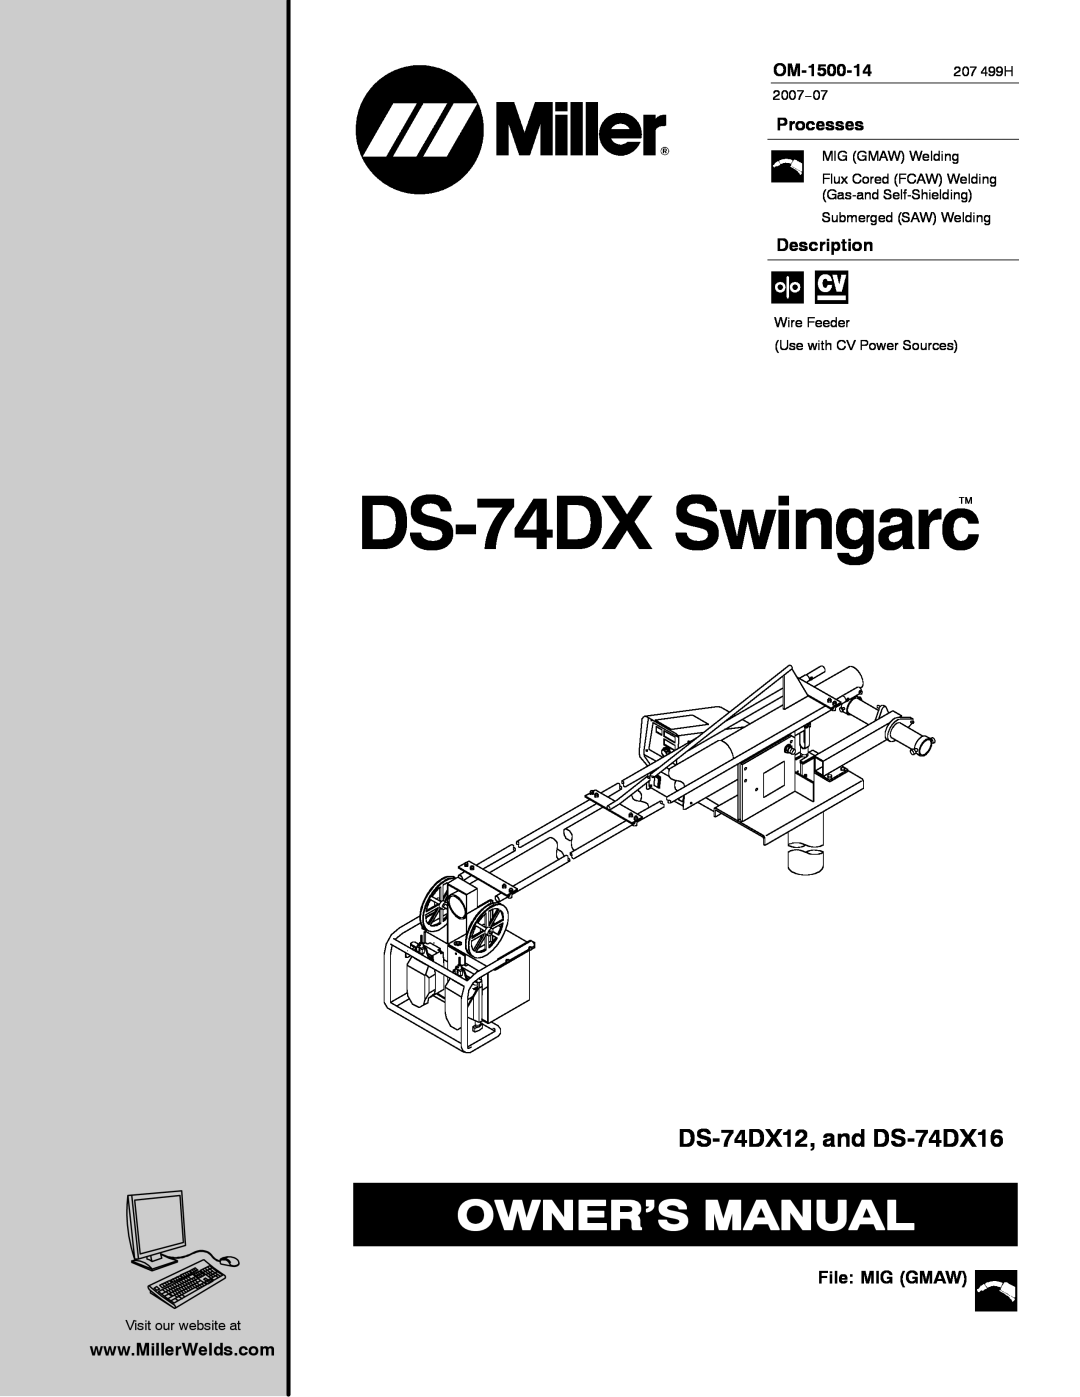 Miller Electric manual DS-74DX Swingarc, DS-74DX12, and DS-74DX16, OM-1500-14 207 499H, Processes, Description 